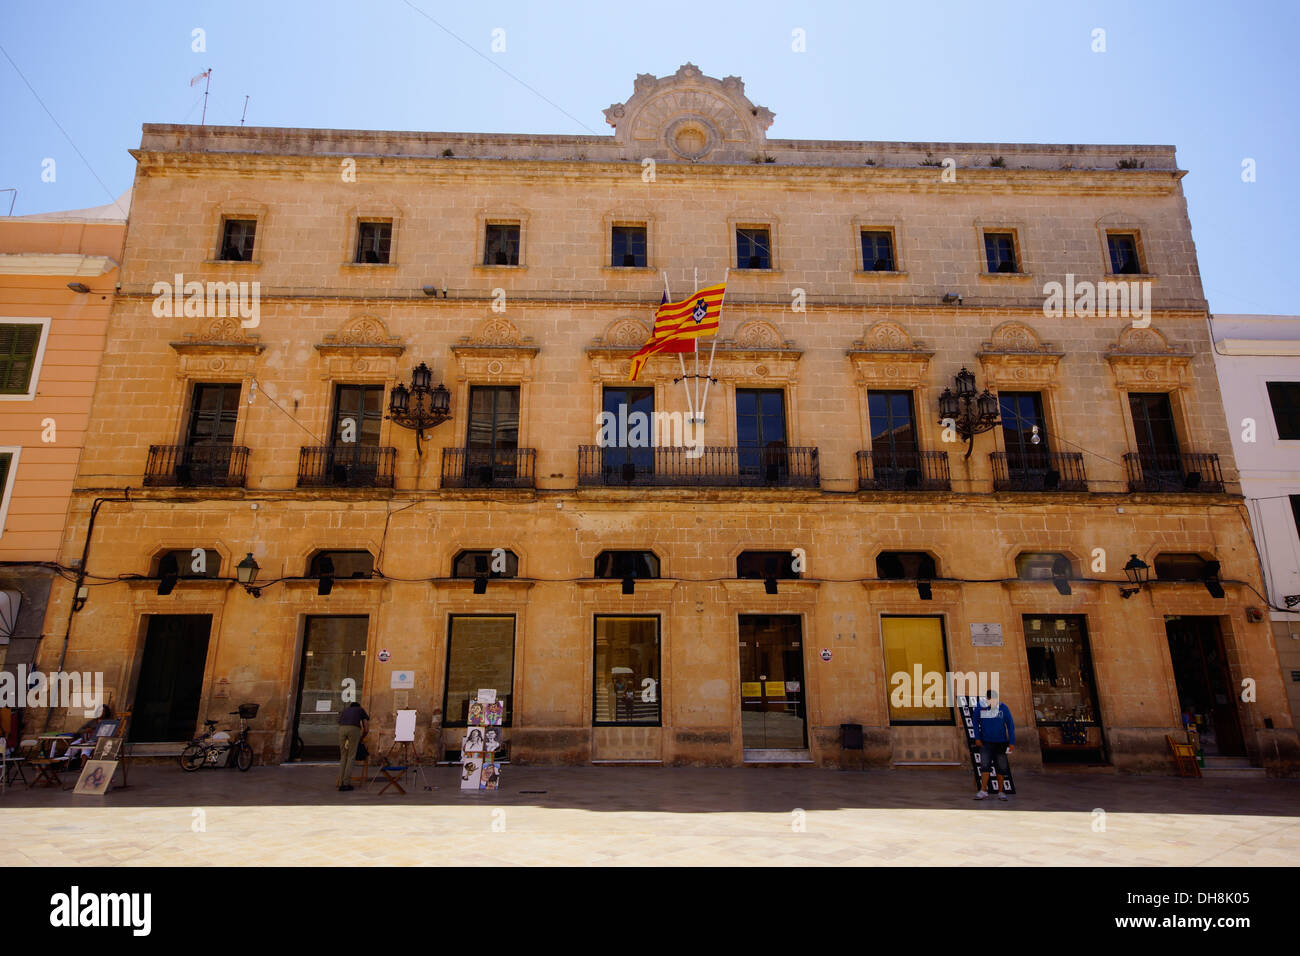 Palacio Viejo, hoy parte de la universidad, Ciutadella, Menorca, España Foto de stock